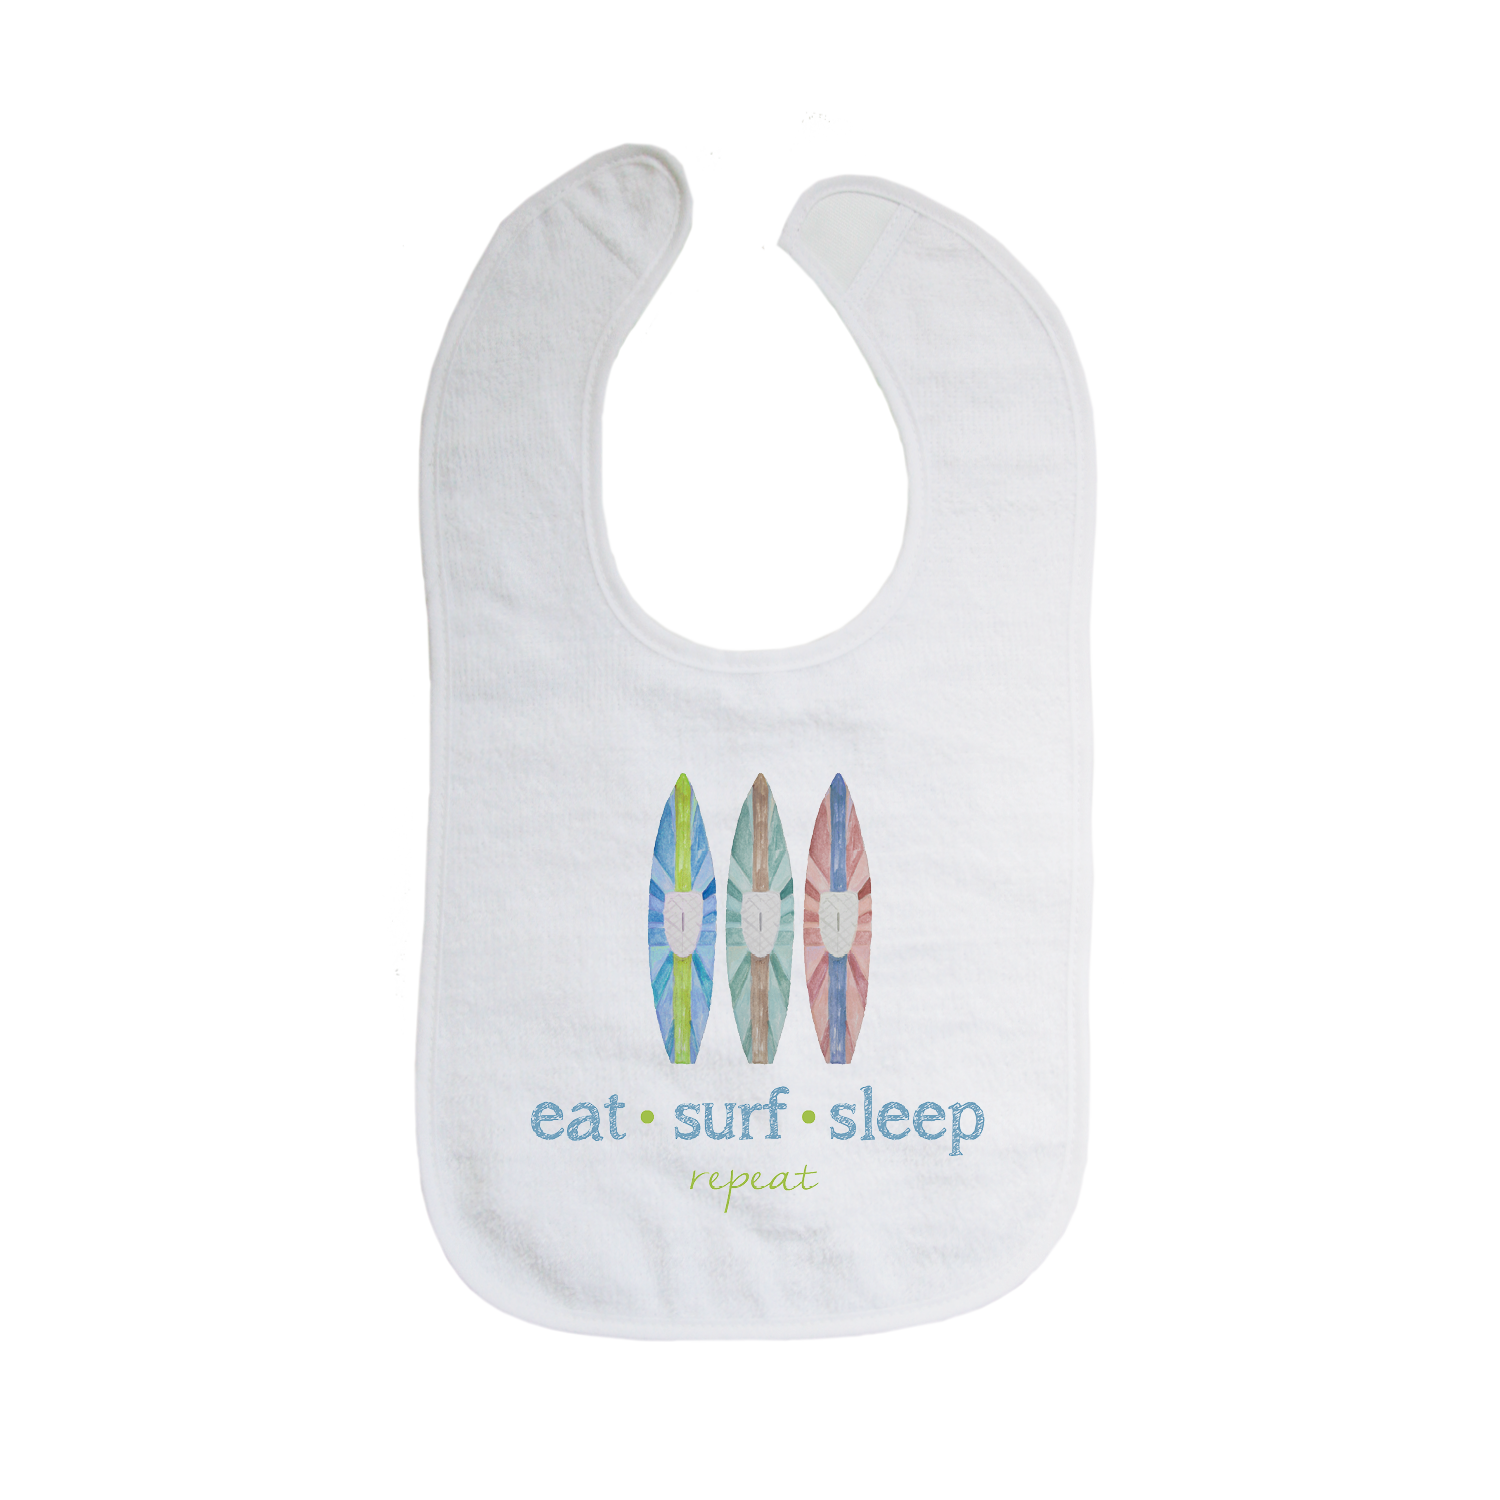 eat surf sleep repeat bib